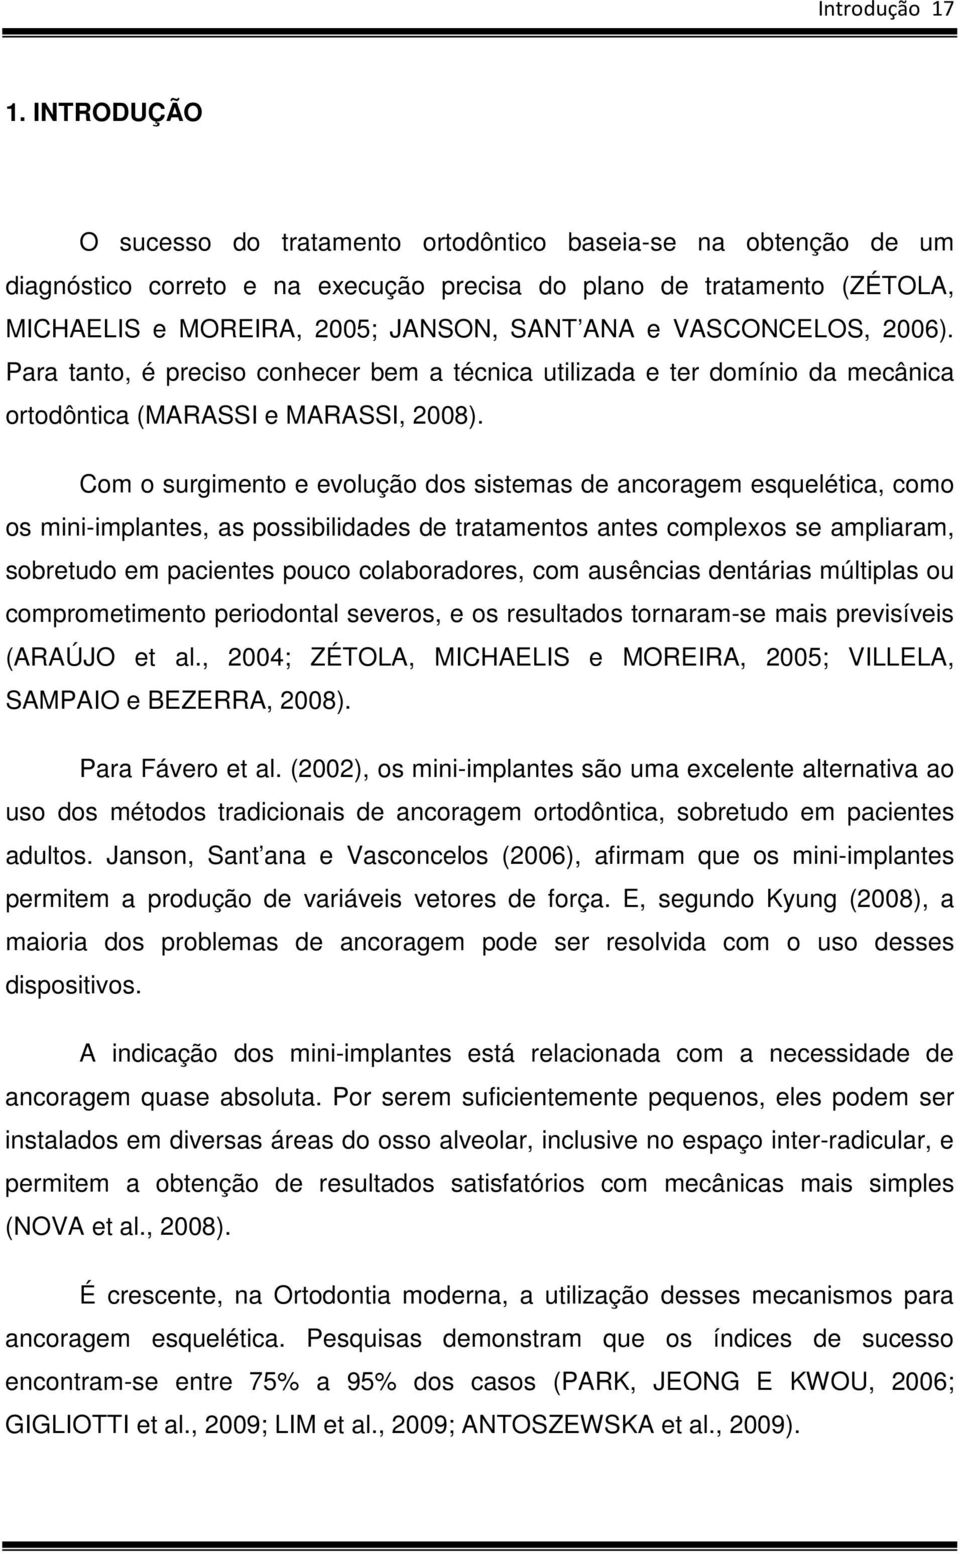 VASCONCELOS, 2006). Para tanto, é preciso conhecer bem a técnica utilizada e ter domínio da mecânica ortodôntica (MARASSI e MARASSI, 2008).